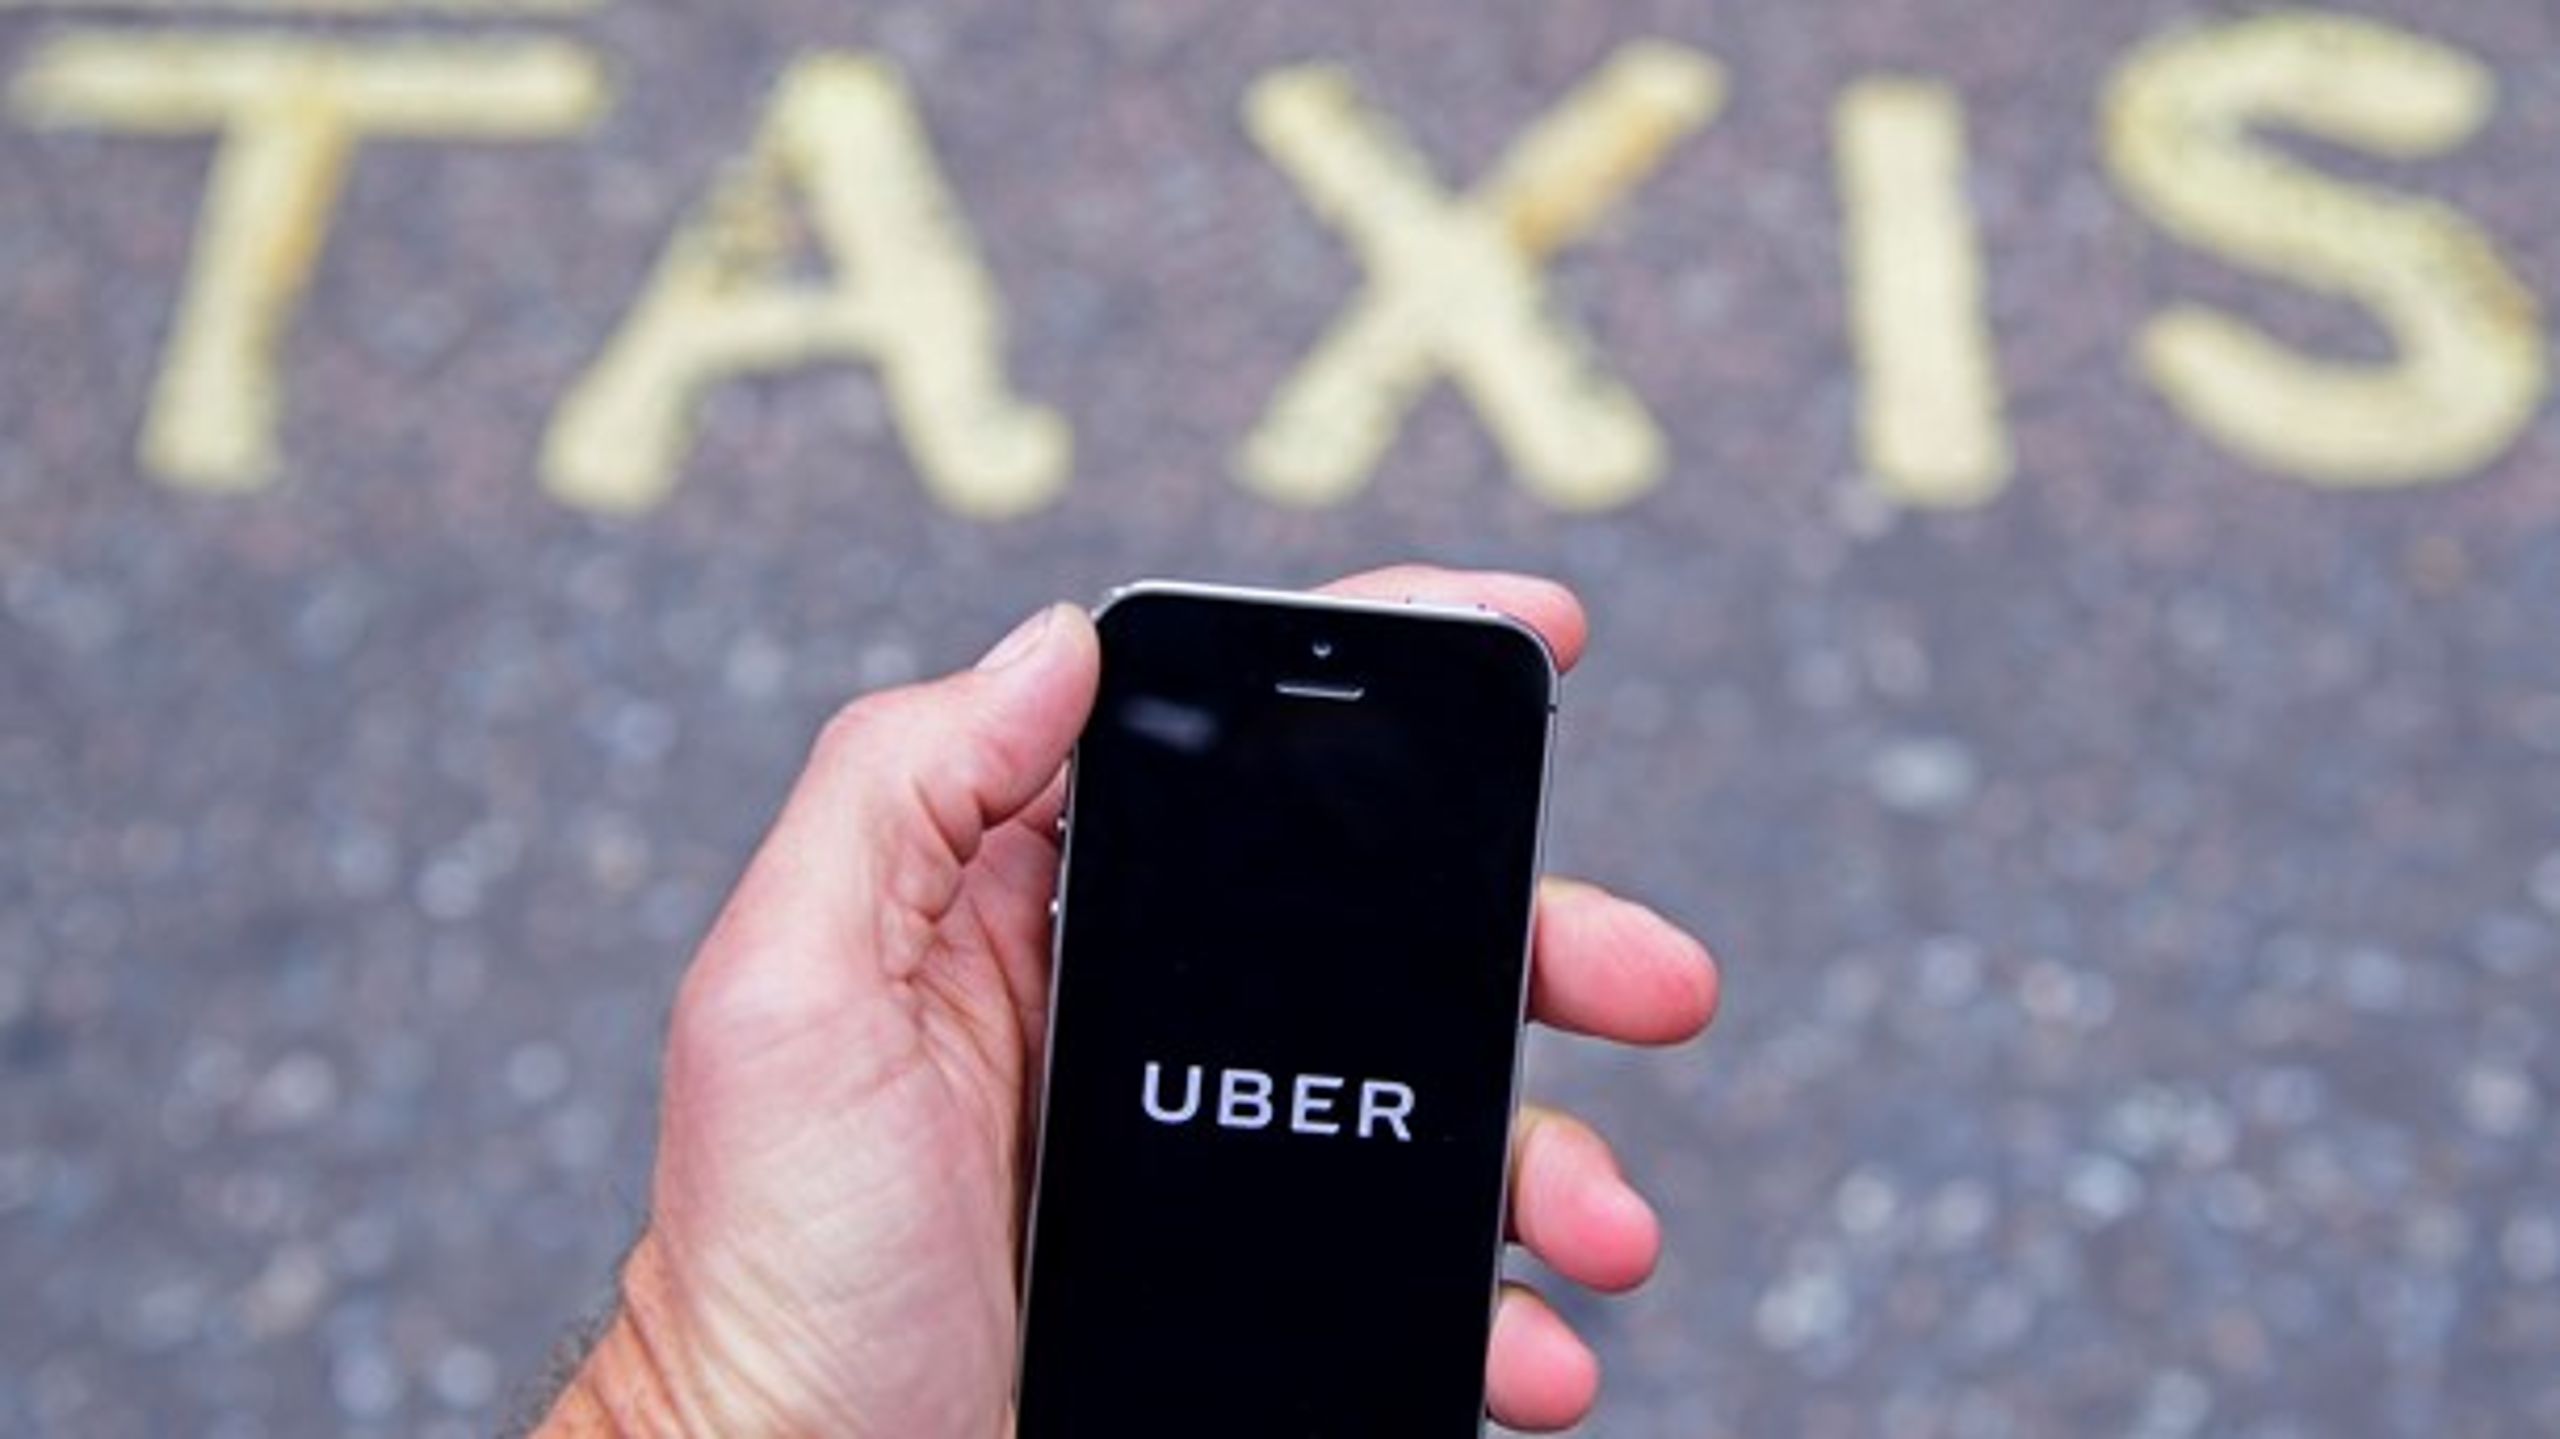 Det er ikke overraskende at&nbsp;Uber på kort tid blevet et meget populært alternativ til de etablerede taxier, skriver Jens Hauch.&nbsp;